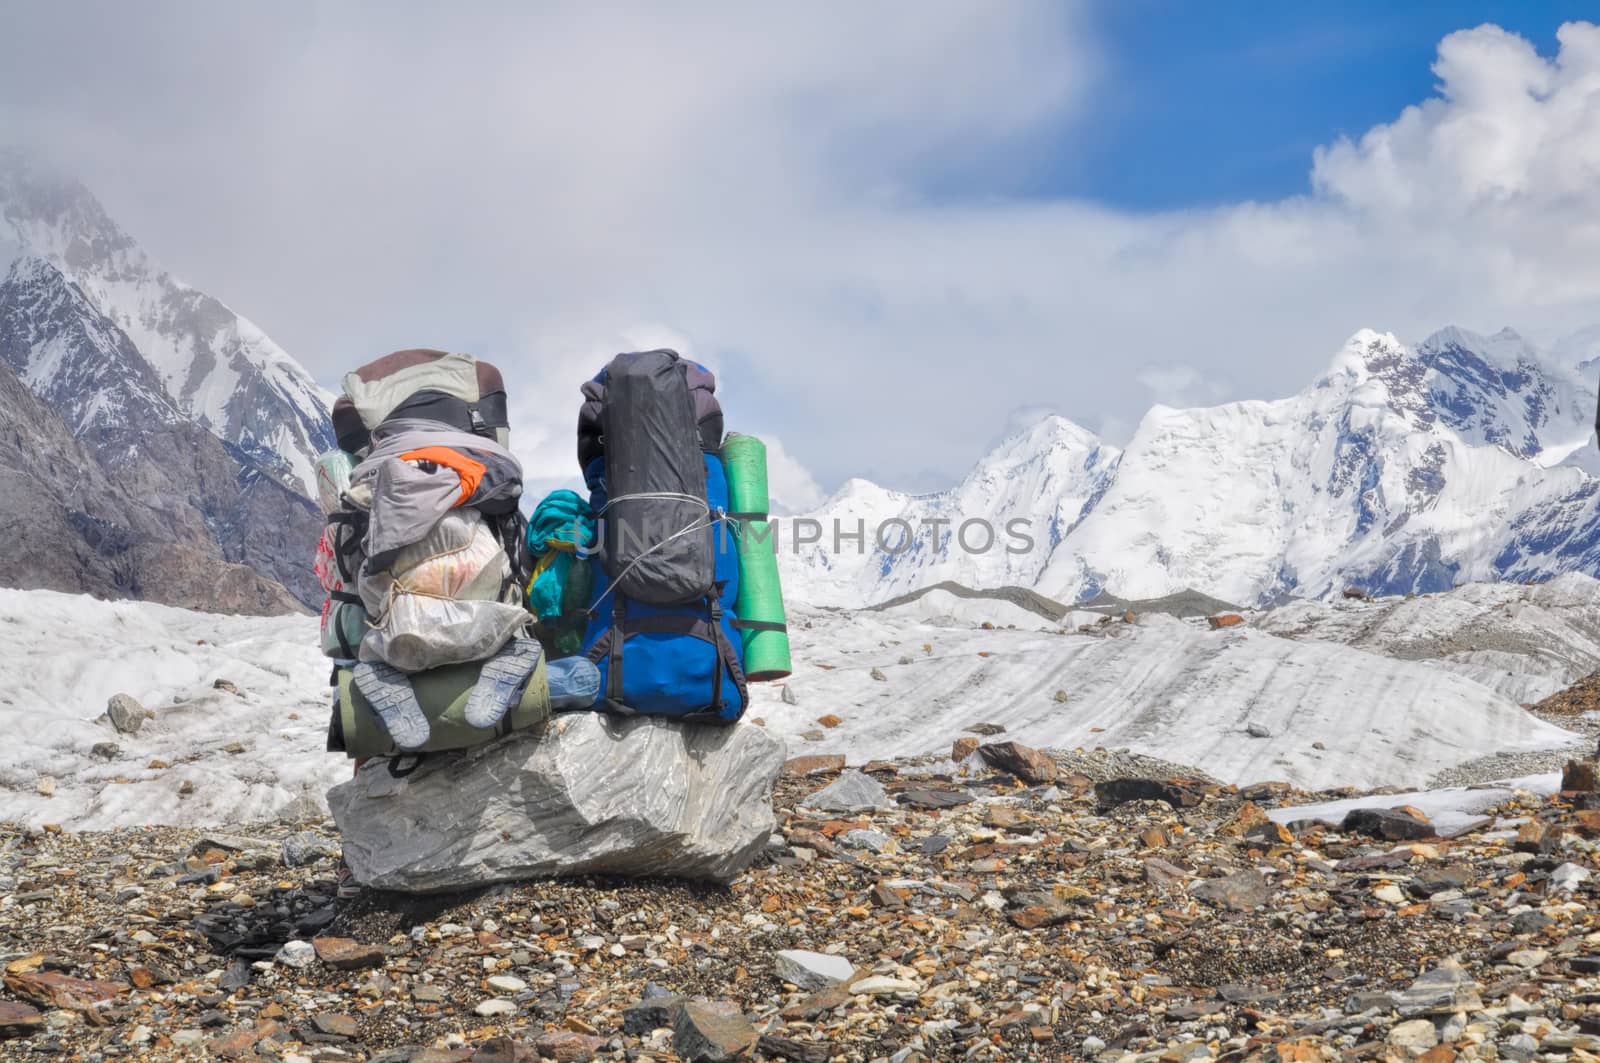 Engilchek glacier hiking by MichalKnitl